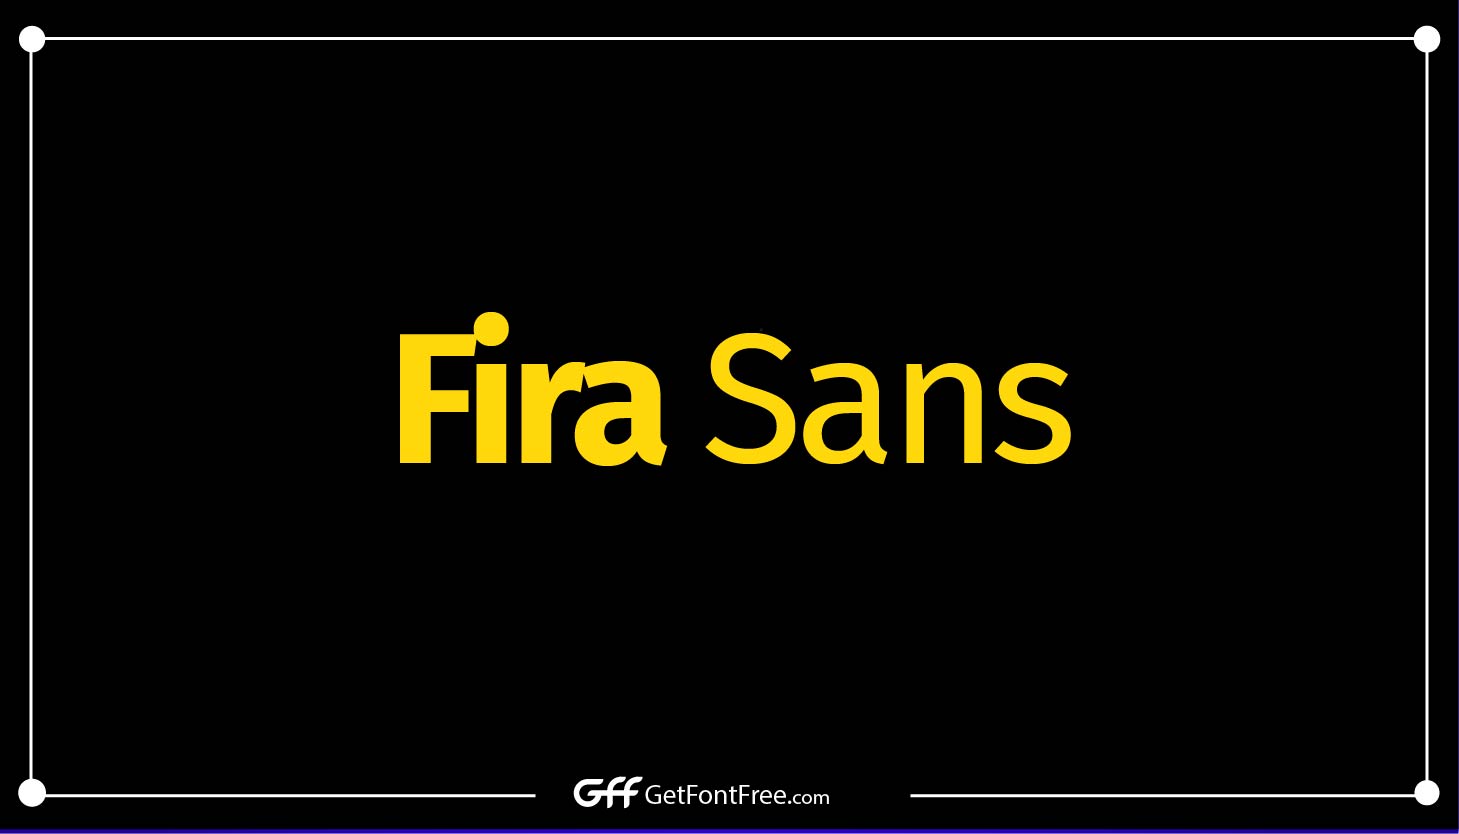 Fira Sans Font